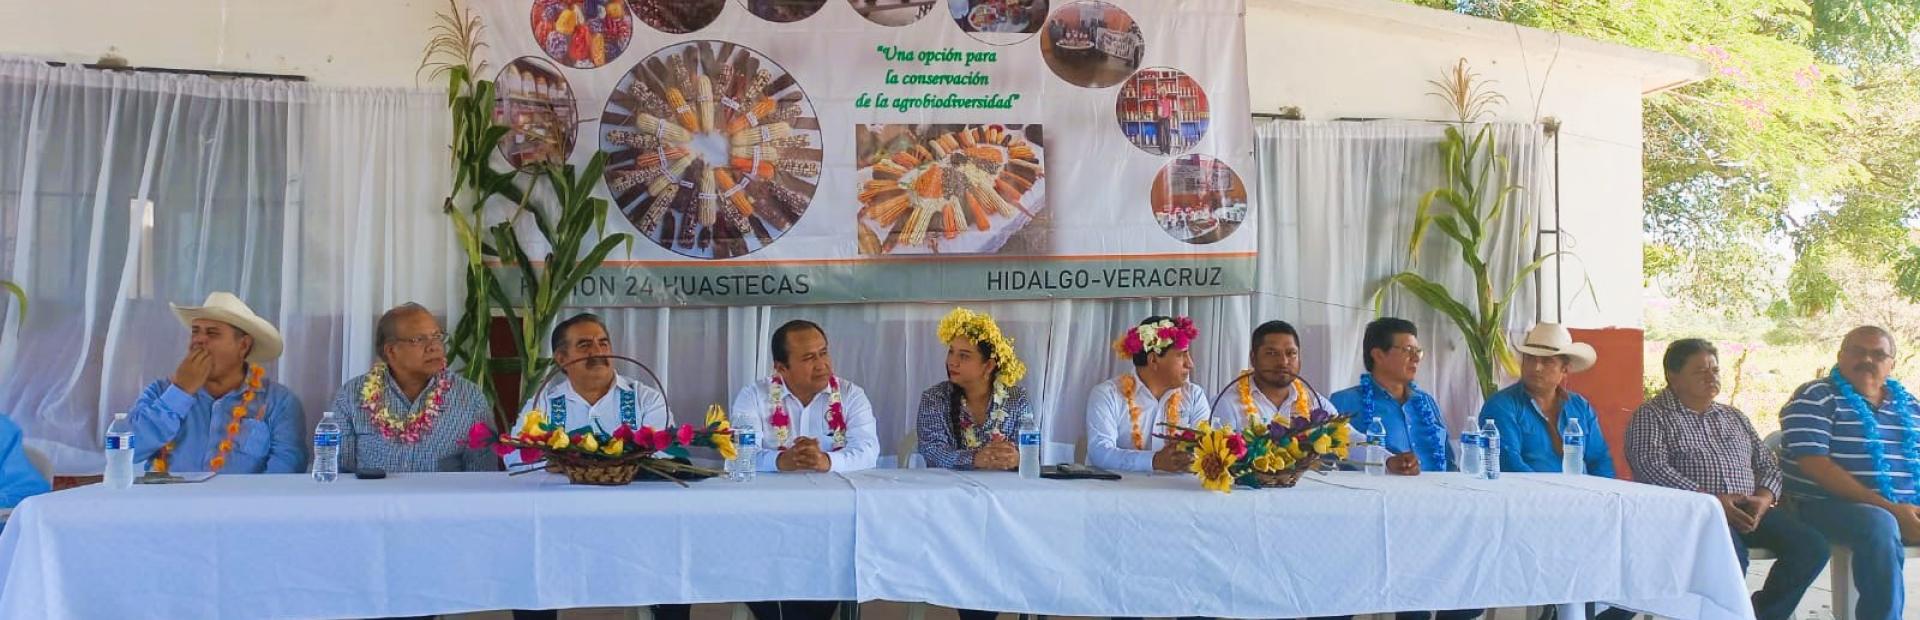 En colaboración con la Secretaría de Agricultura y Desarrollo Rural, SNICS, INIFAP, COLPOS e instituciones locales, se inauguró el Banco Regional de Semillas Nativas en la zona de las Huastecas